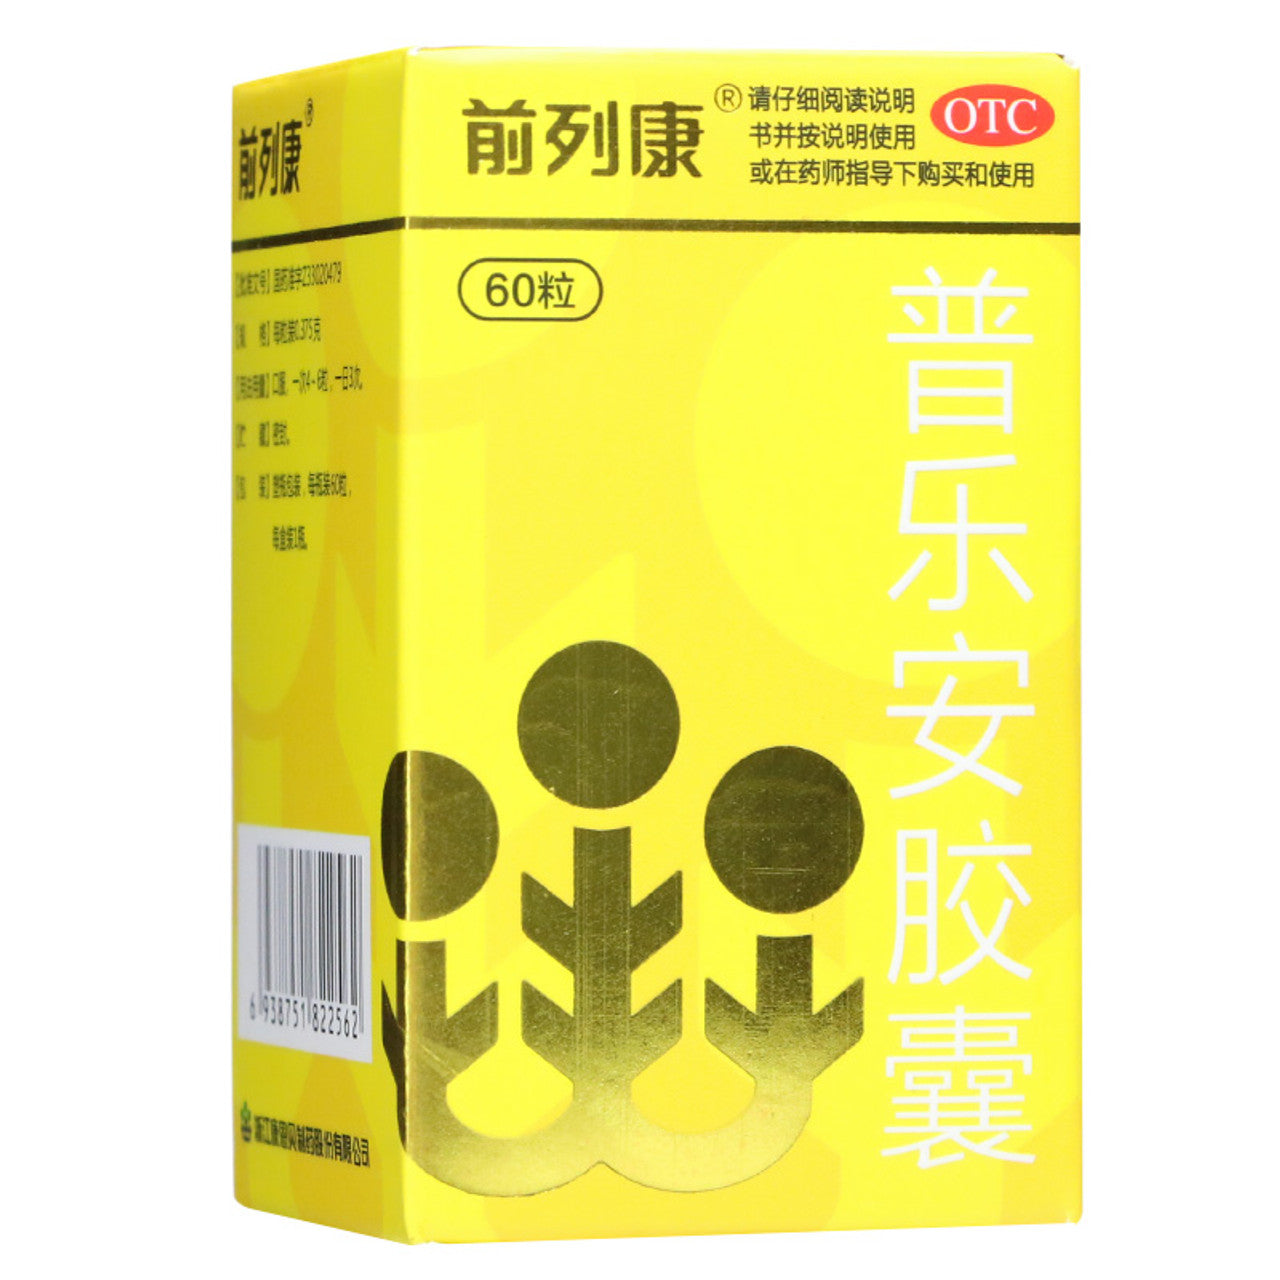 Herbal Supplement Pule'an Jiaonang / Pulean Jiaonang / Pulean Capsules / Pu Le An Jiao Nang / Pu Le An Capsules